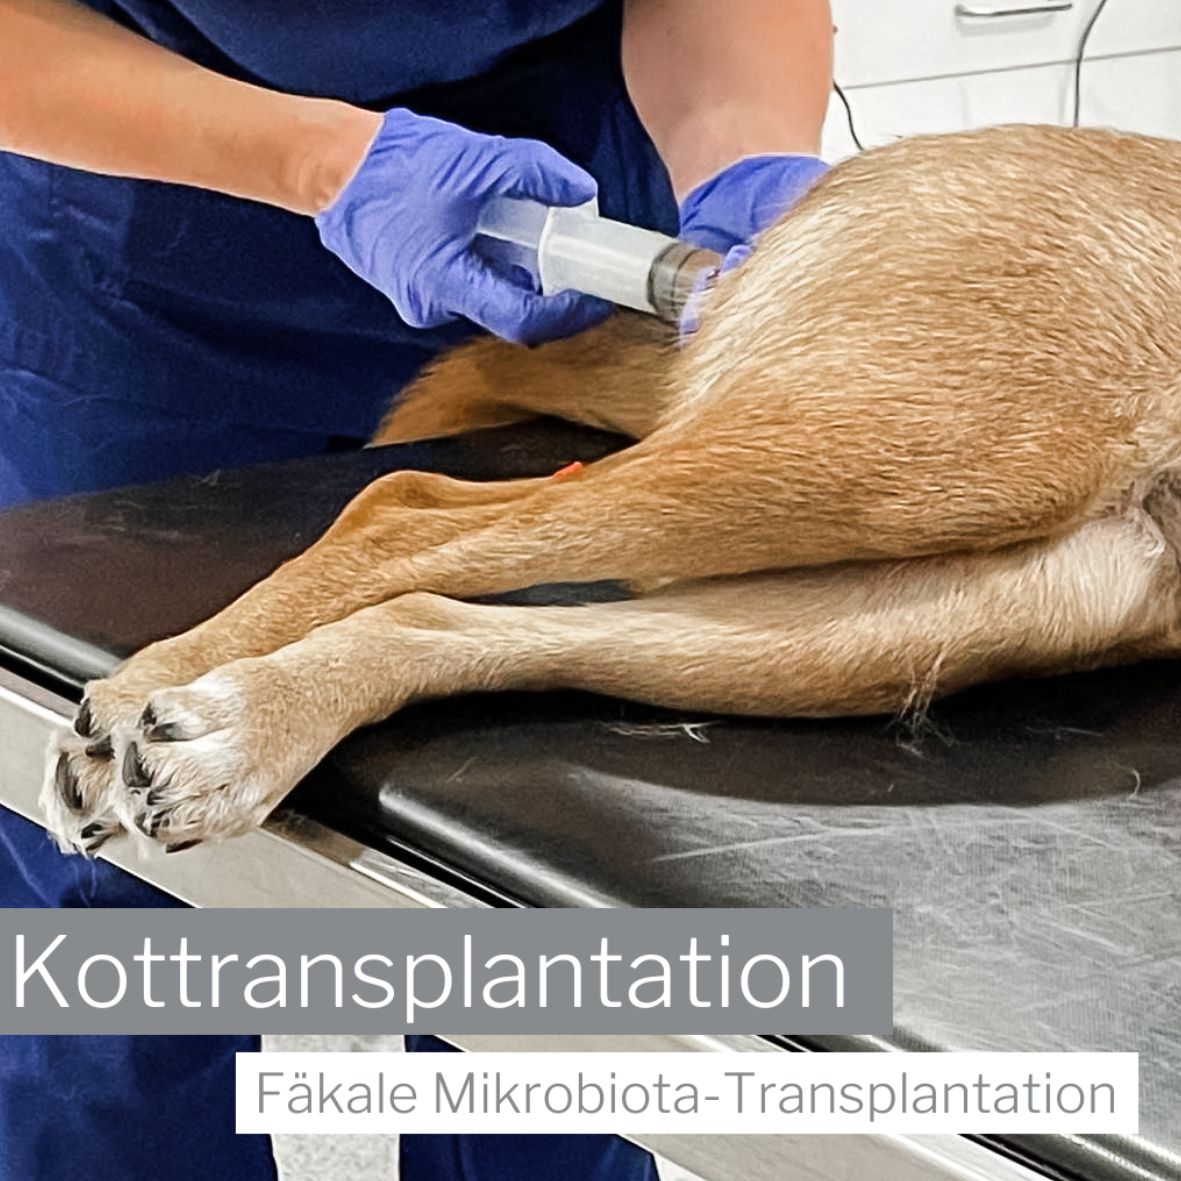 Kottransplantation